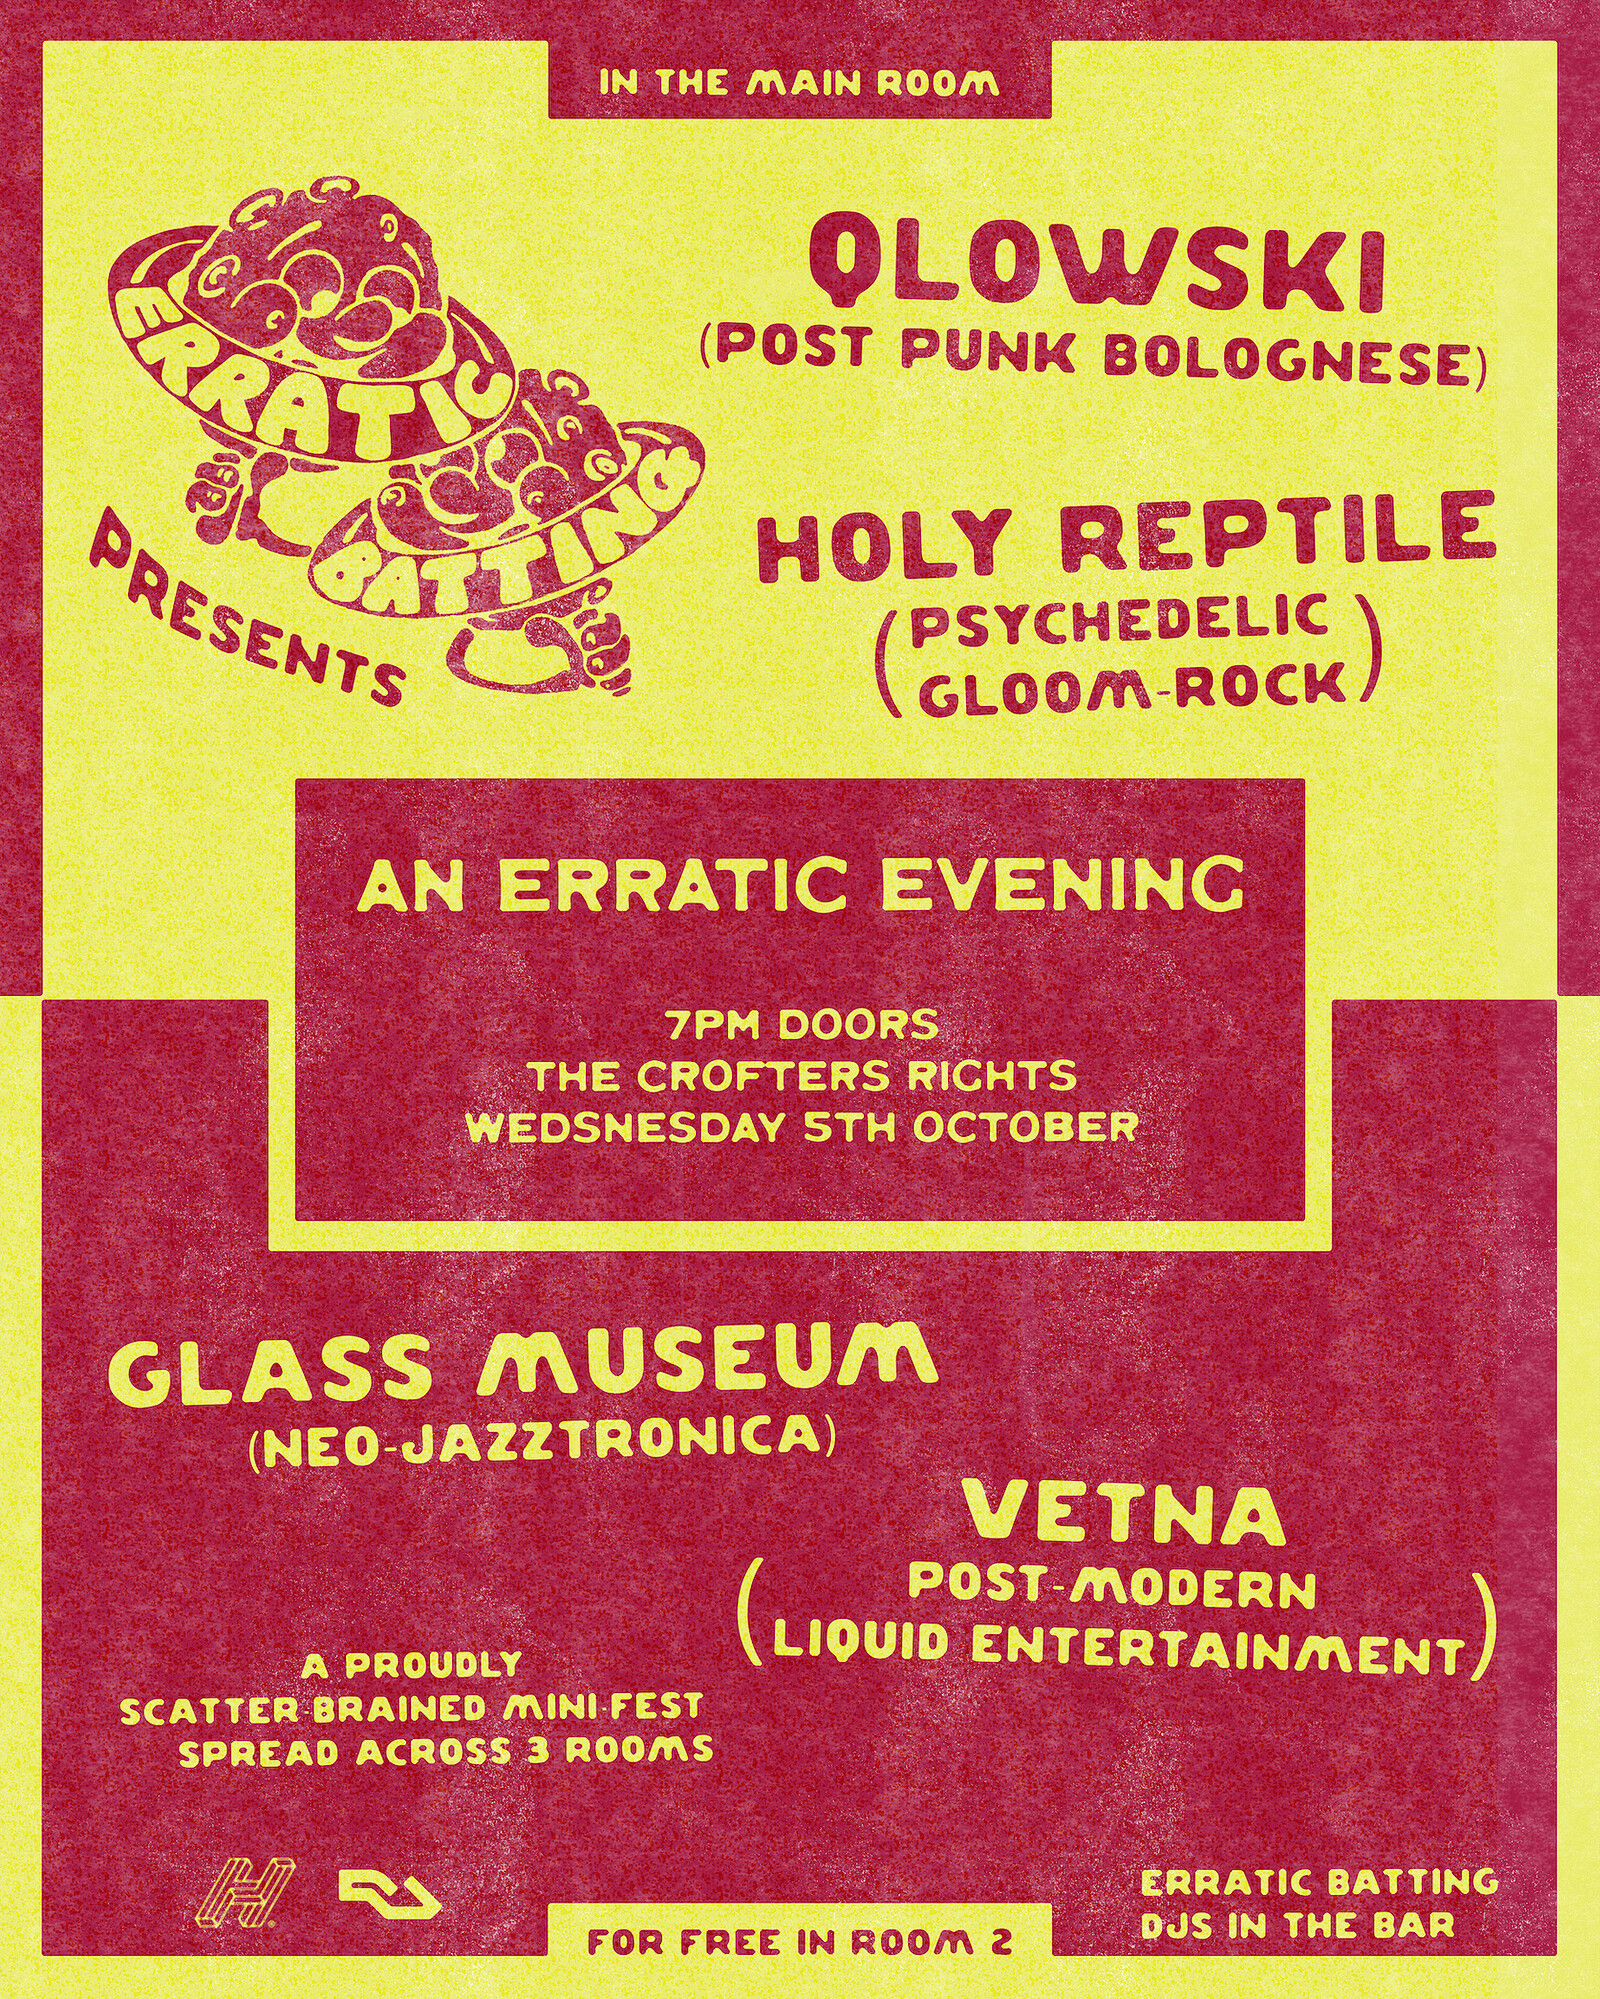 Qlowski + Holy Reptile + Vetna at Crofters Rights